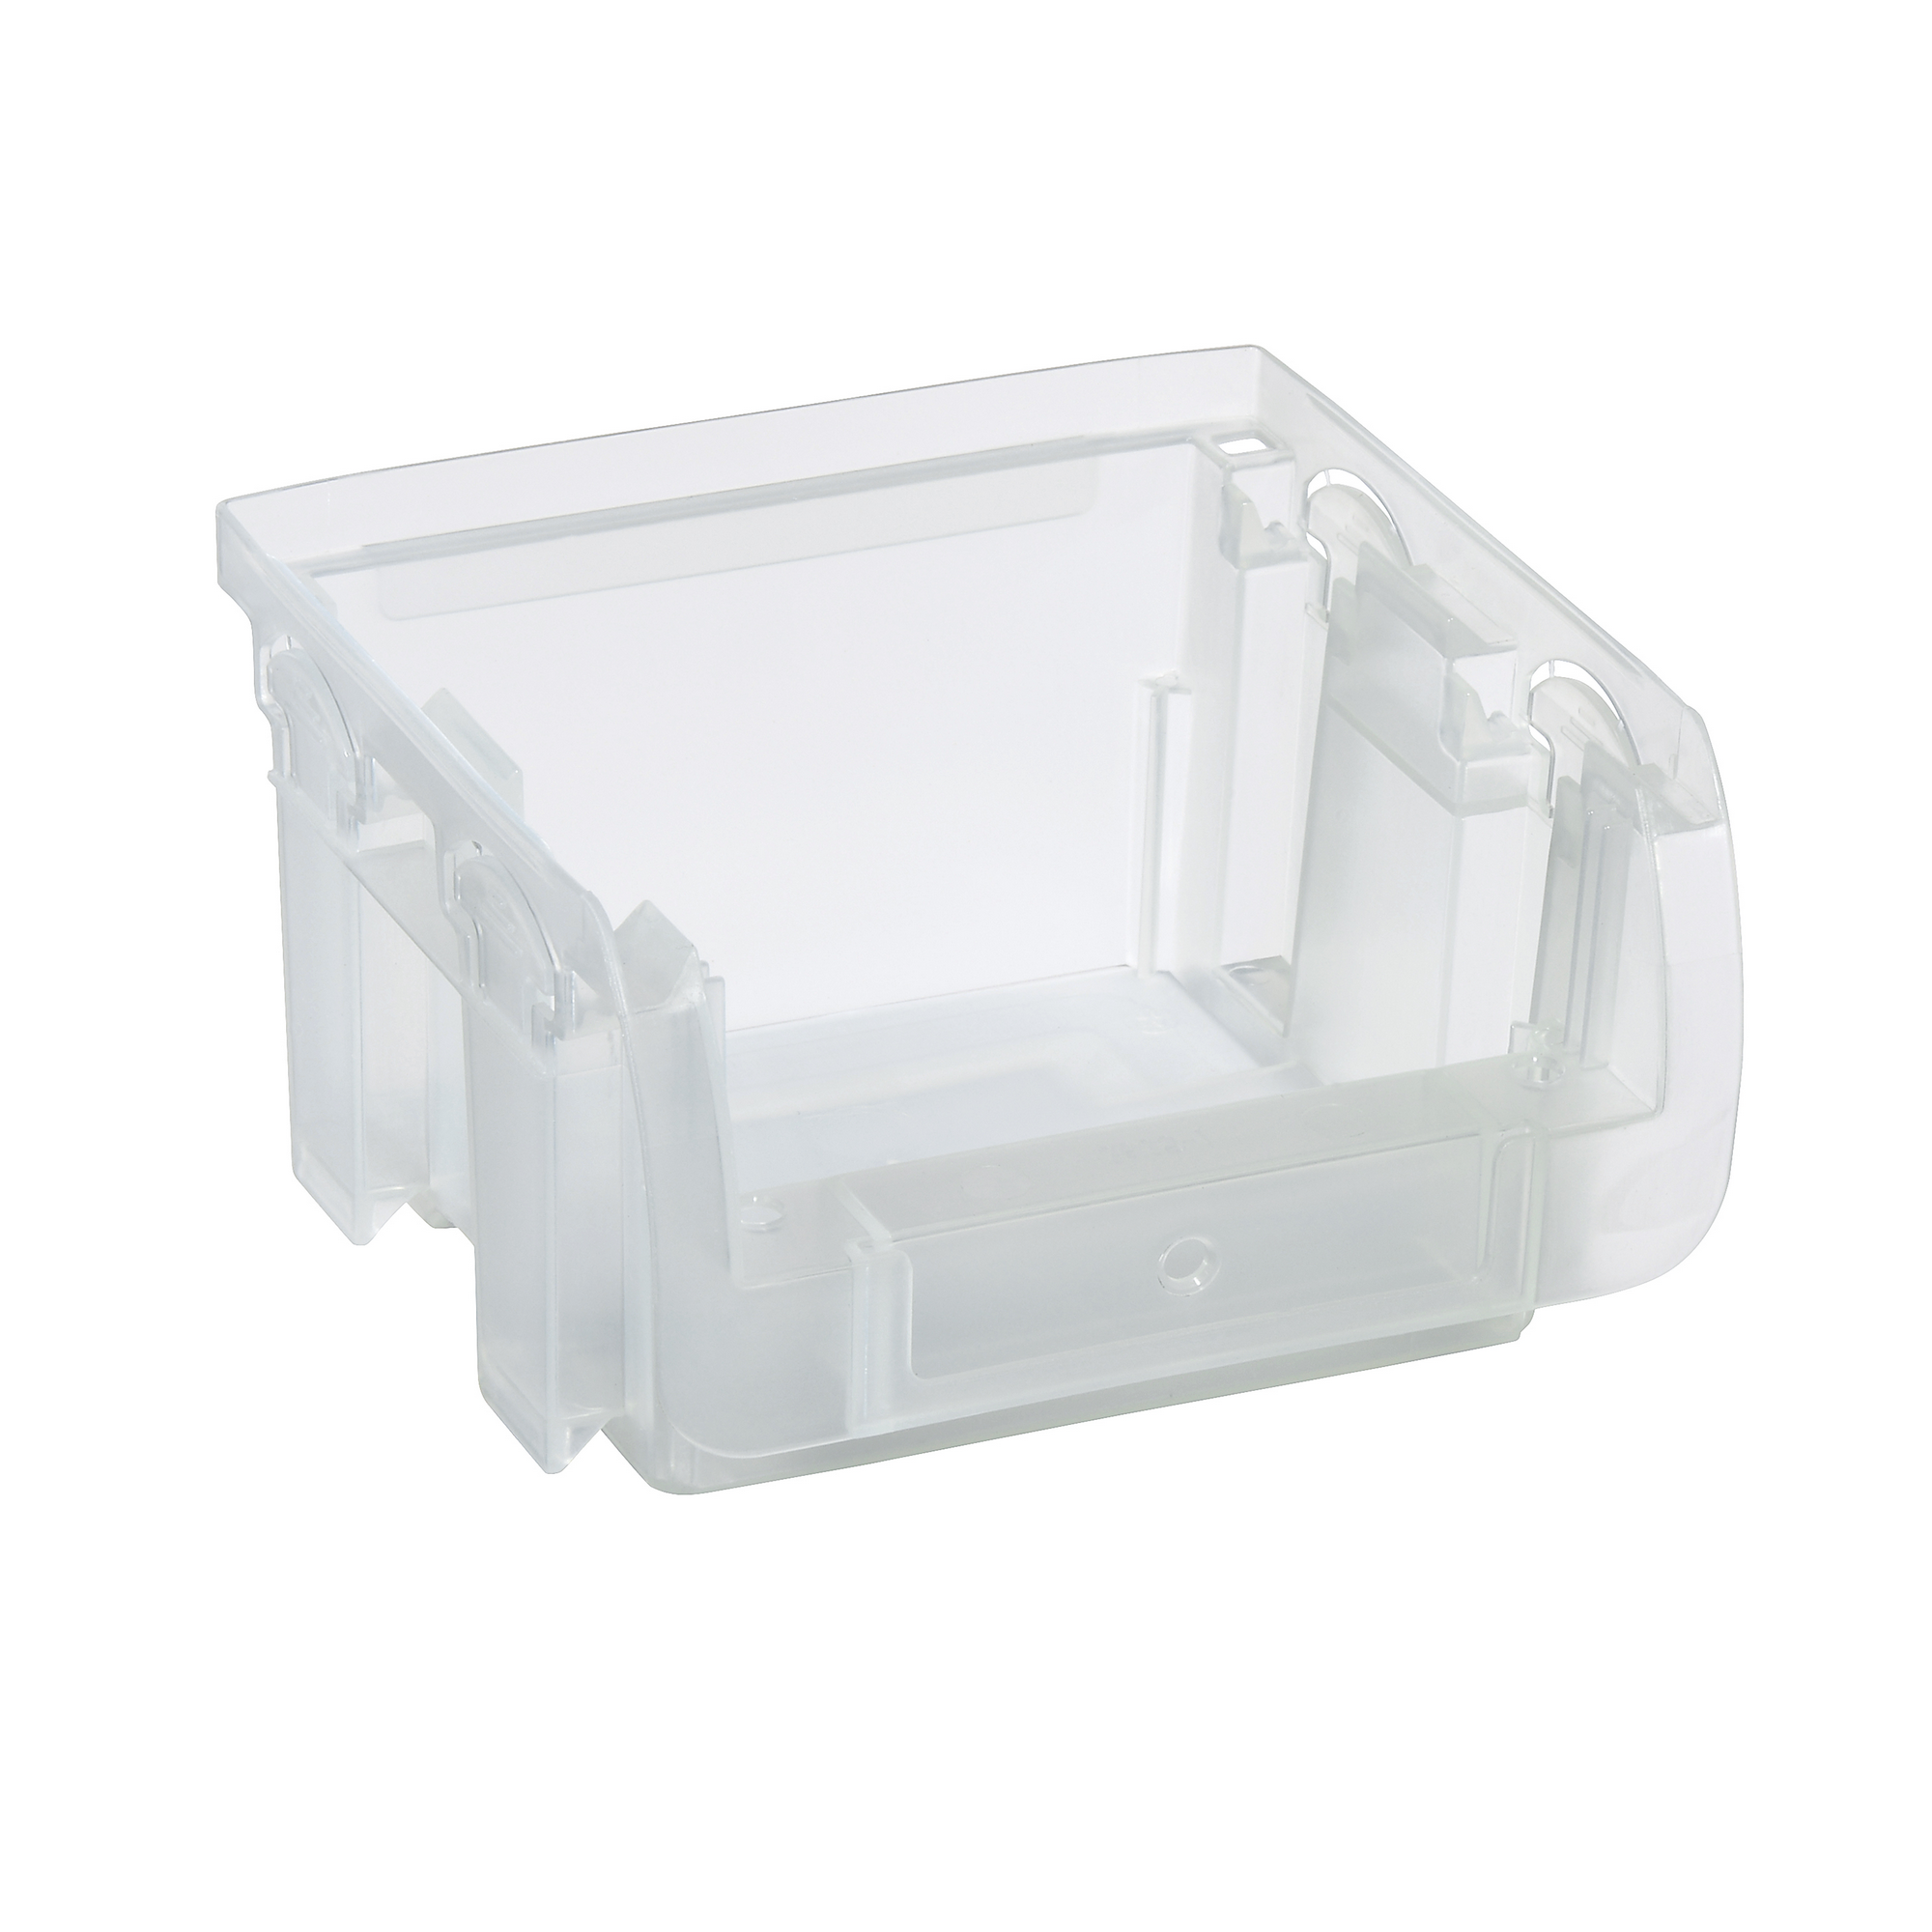 ProfiPlus Stapelsichtbox 'Compact 1' transparent 10,2 x 10 x 6 cm + product picture